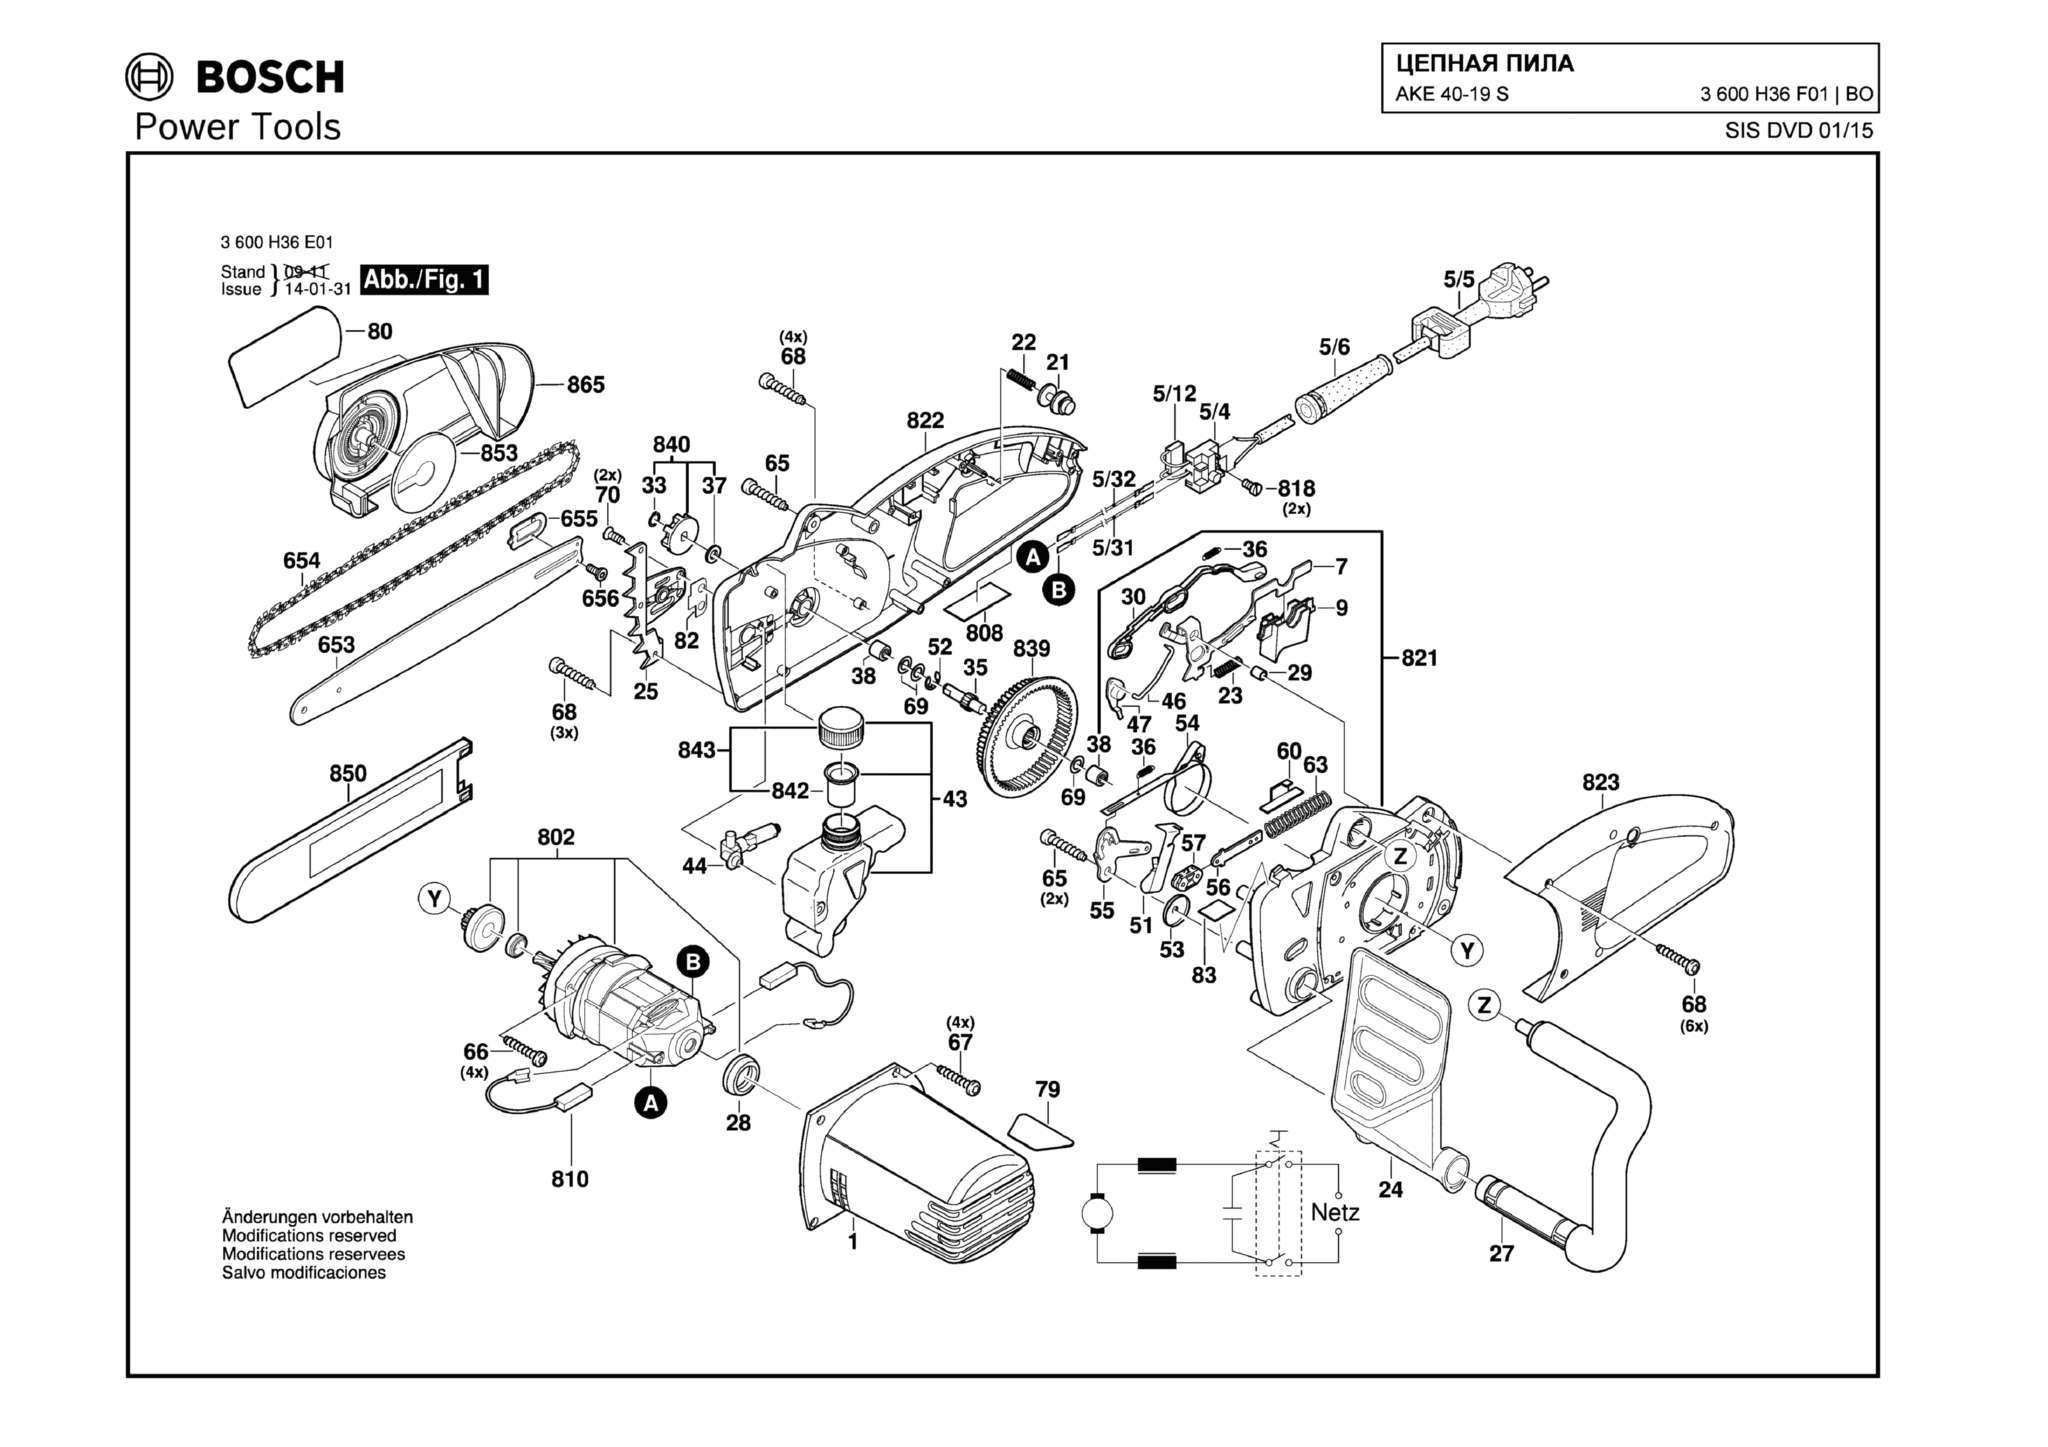 Запчасти, схема и деталировка Bosch AKE 40-19 S (ТИП 3600H36F01)